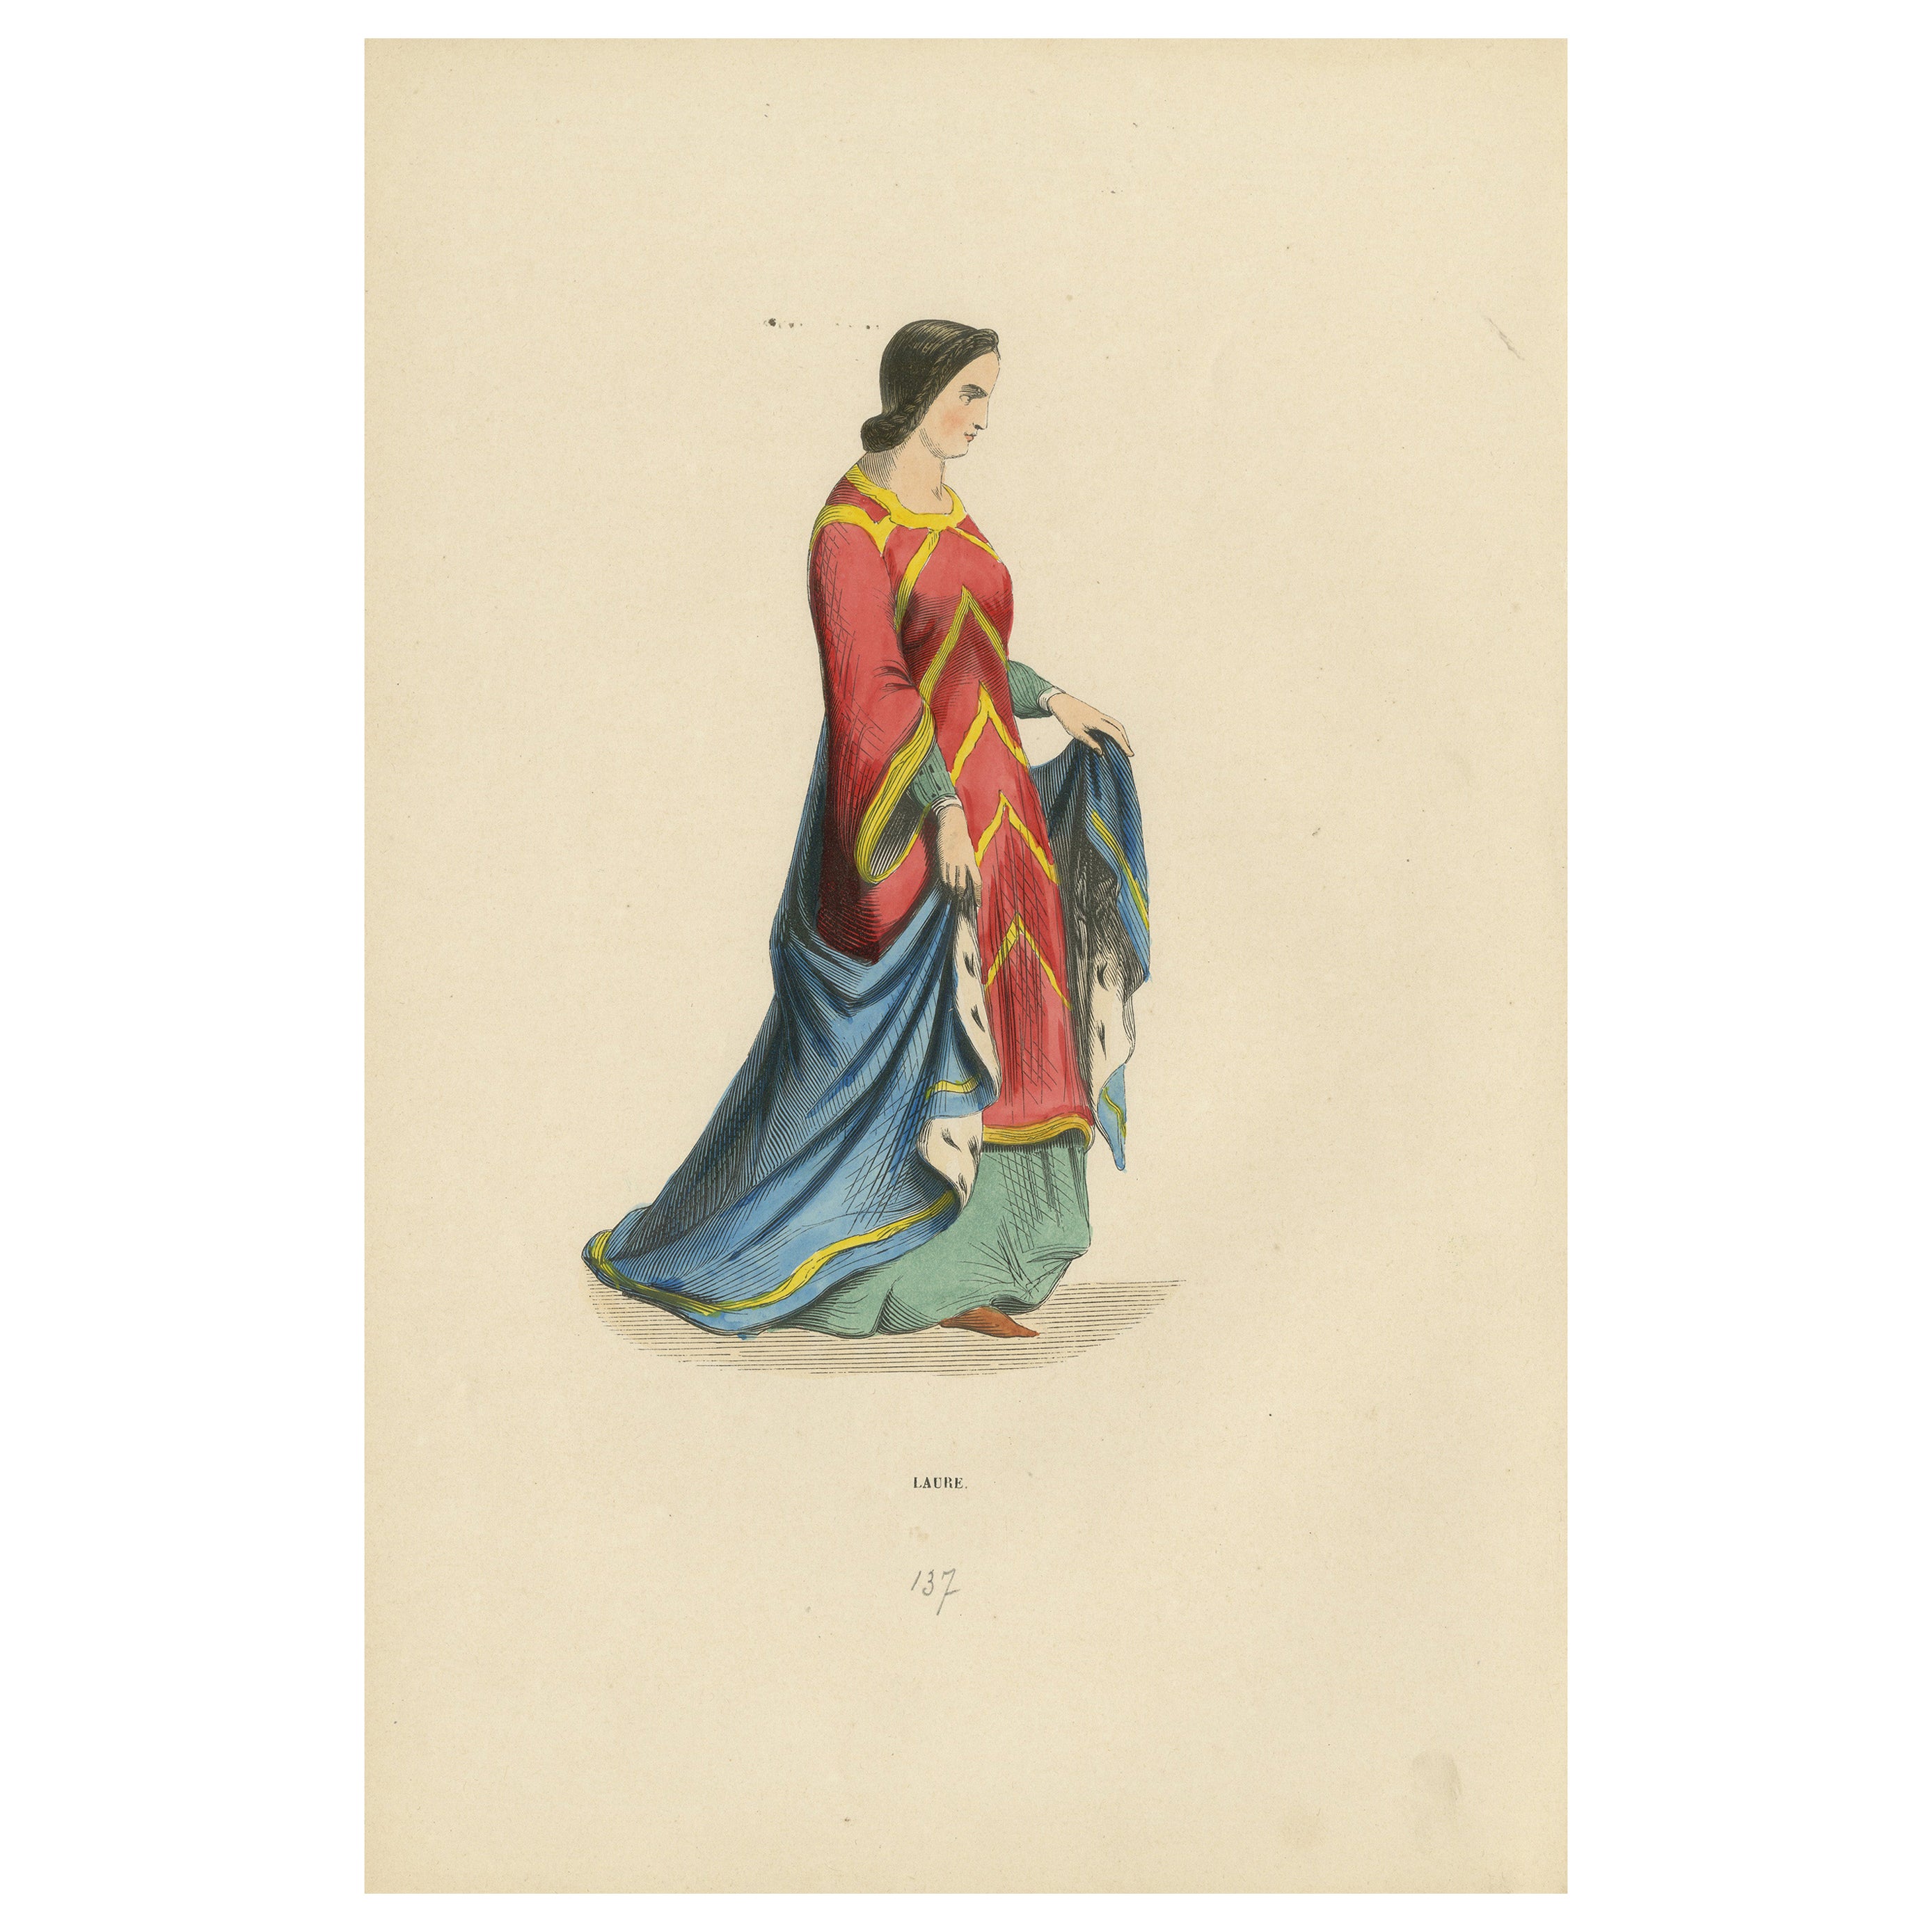 La grâce de la Renaissance : La tenue d'une dame dans le "Costume du Moyen Âge", 1847